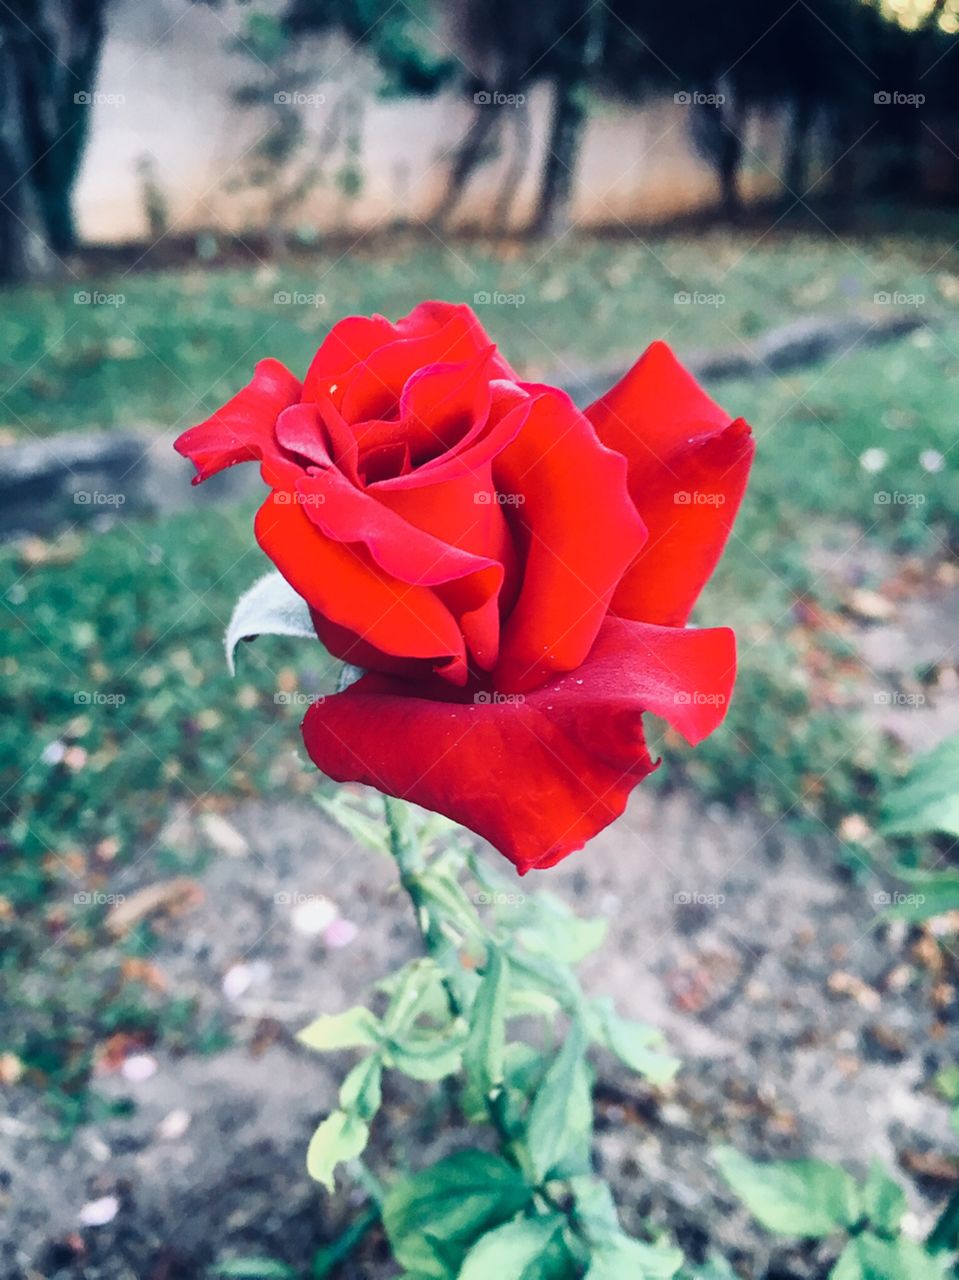 🌺Fim de #cooper!
Suado, cansado e feliz, curtindo a beleza das #flores. Hoje, com nossa #rosa vermelha.
🏁 
#corrida #running #flowers #CorujãoDaMadrugada #alvorada #flor